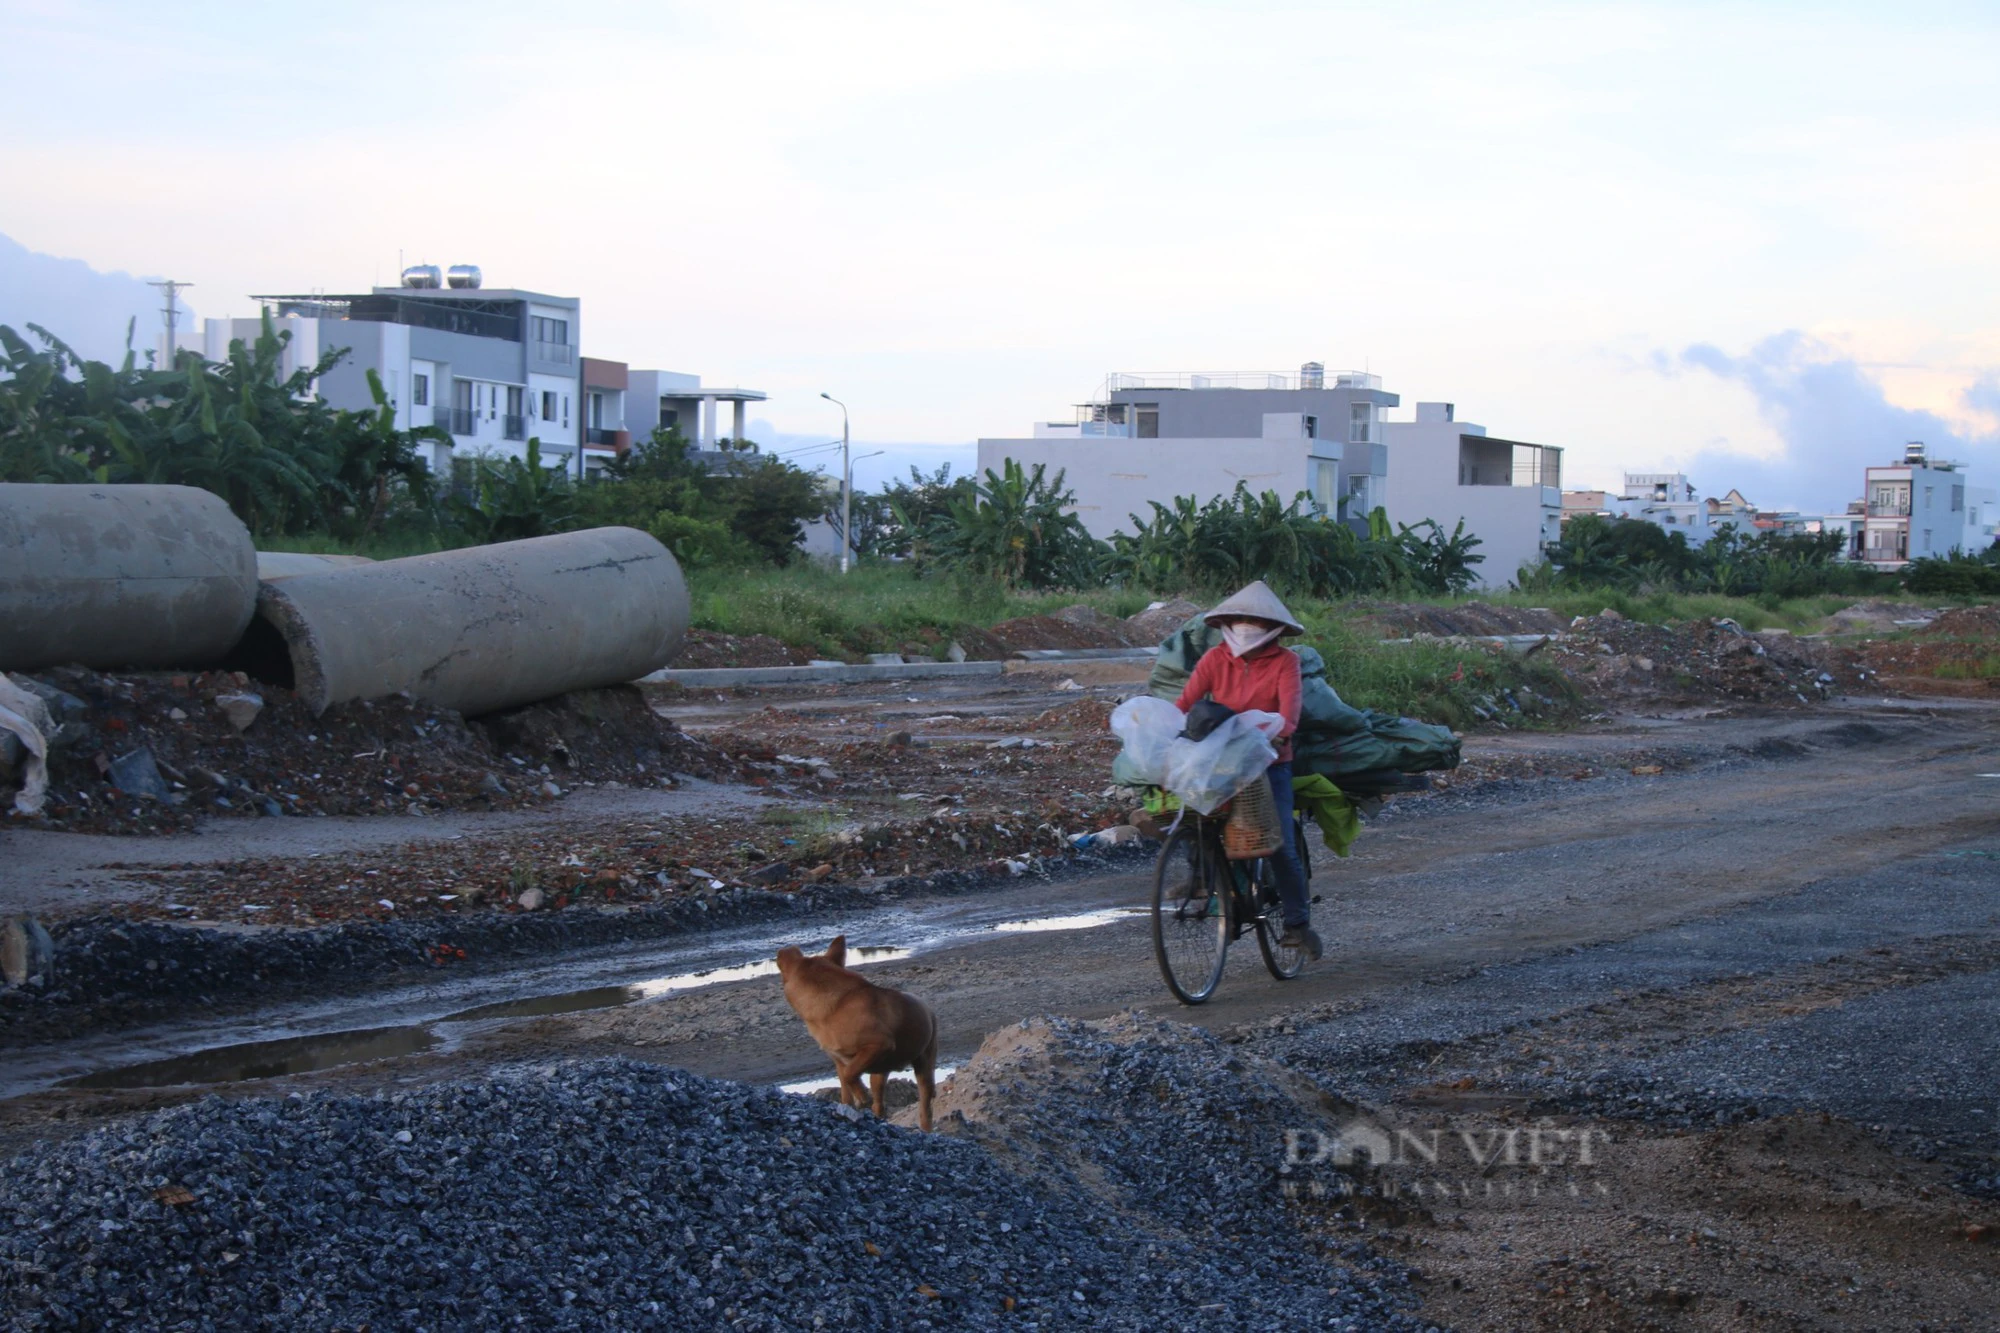 Đà Nẵng: Người dân sống khổ nơi dự án gần 700 tỷ đồng đi qua  - Ảnh 6.